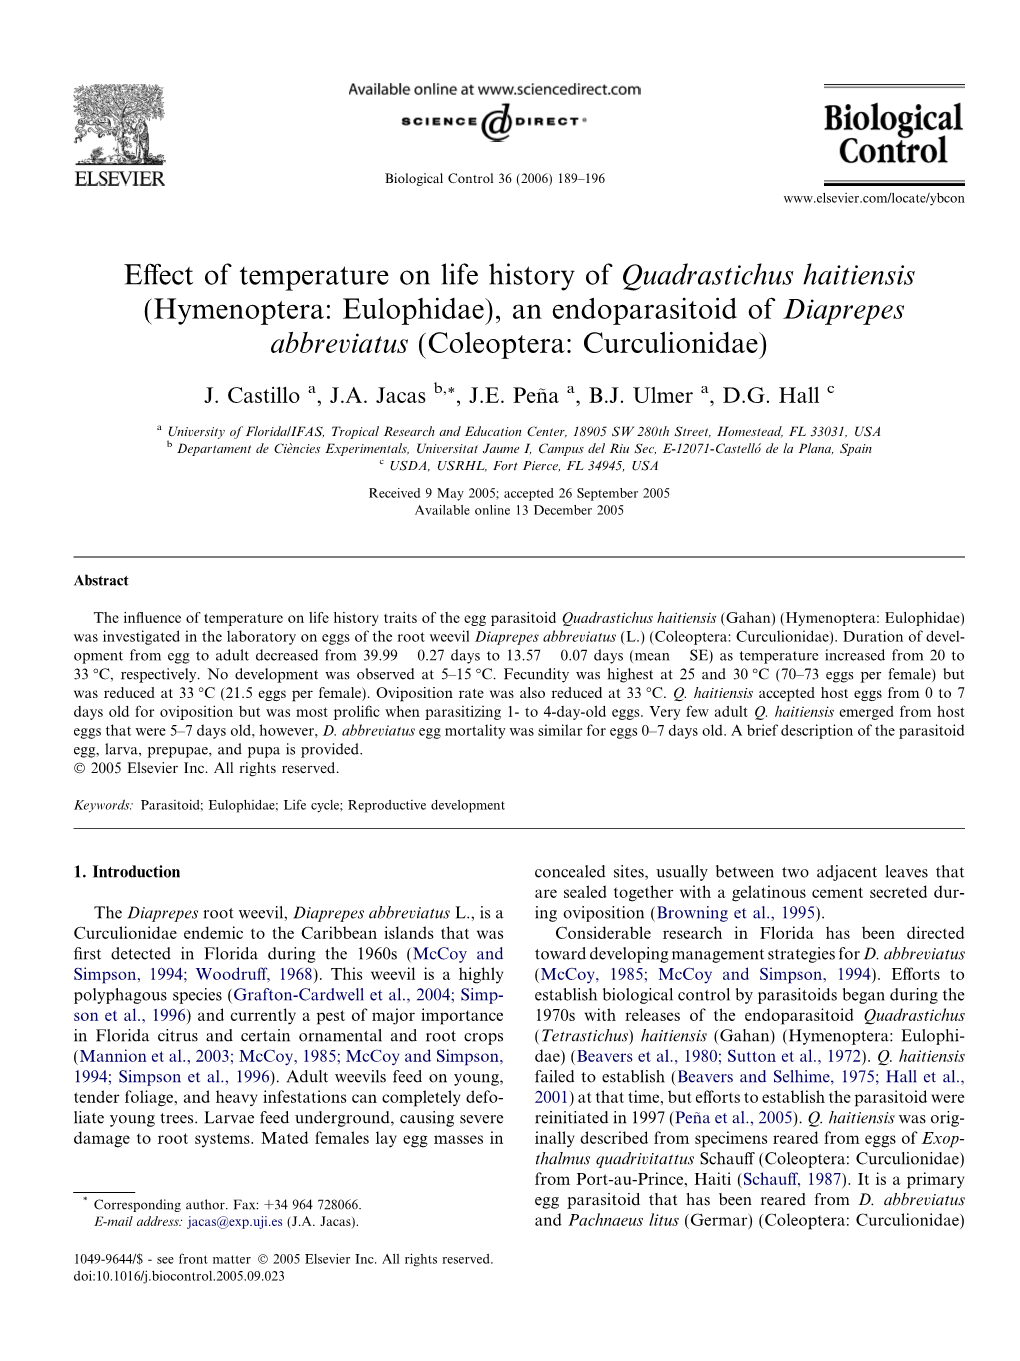 Effect of Temperature on Life History of Quadrastichus Haitiensis